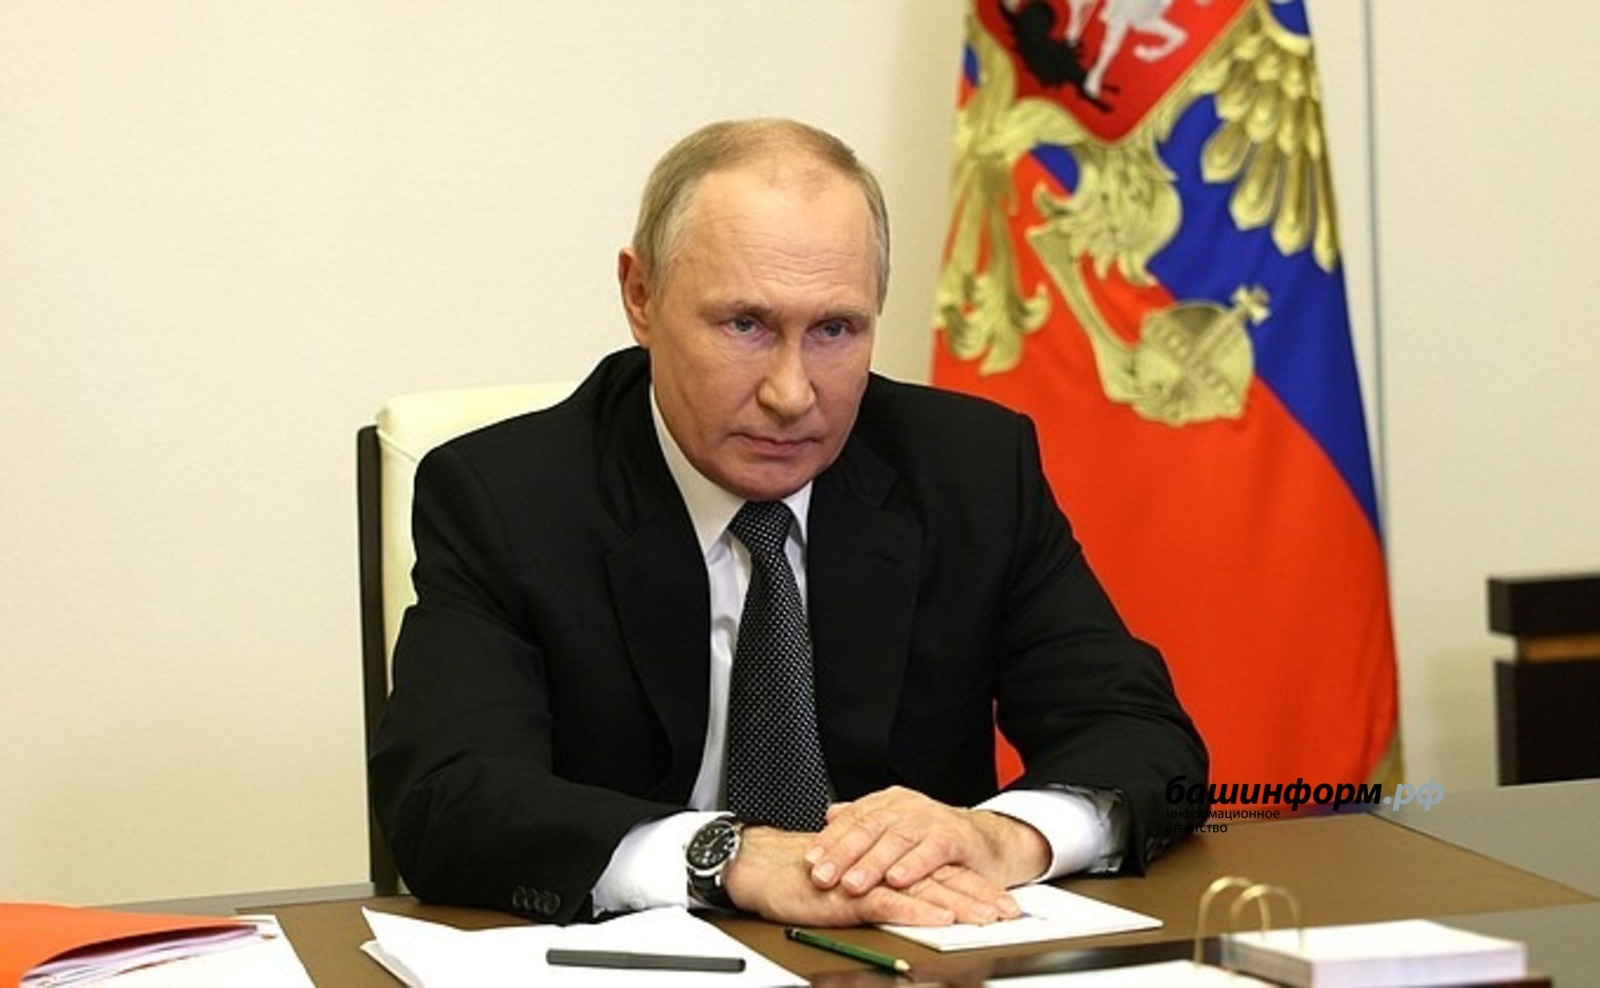 Владимир Путин Ростуризма пăрахăçламалли указ ҫине алӑ пуснă